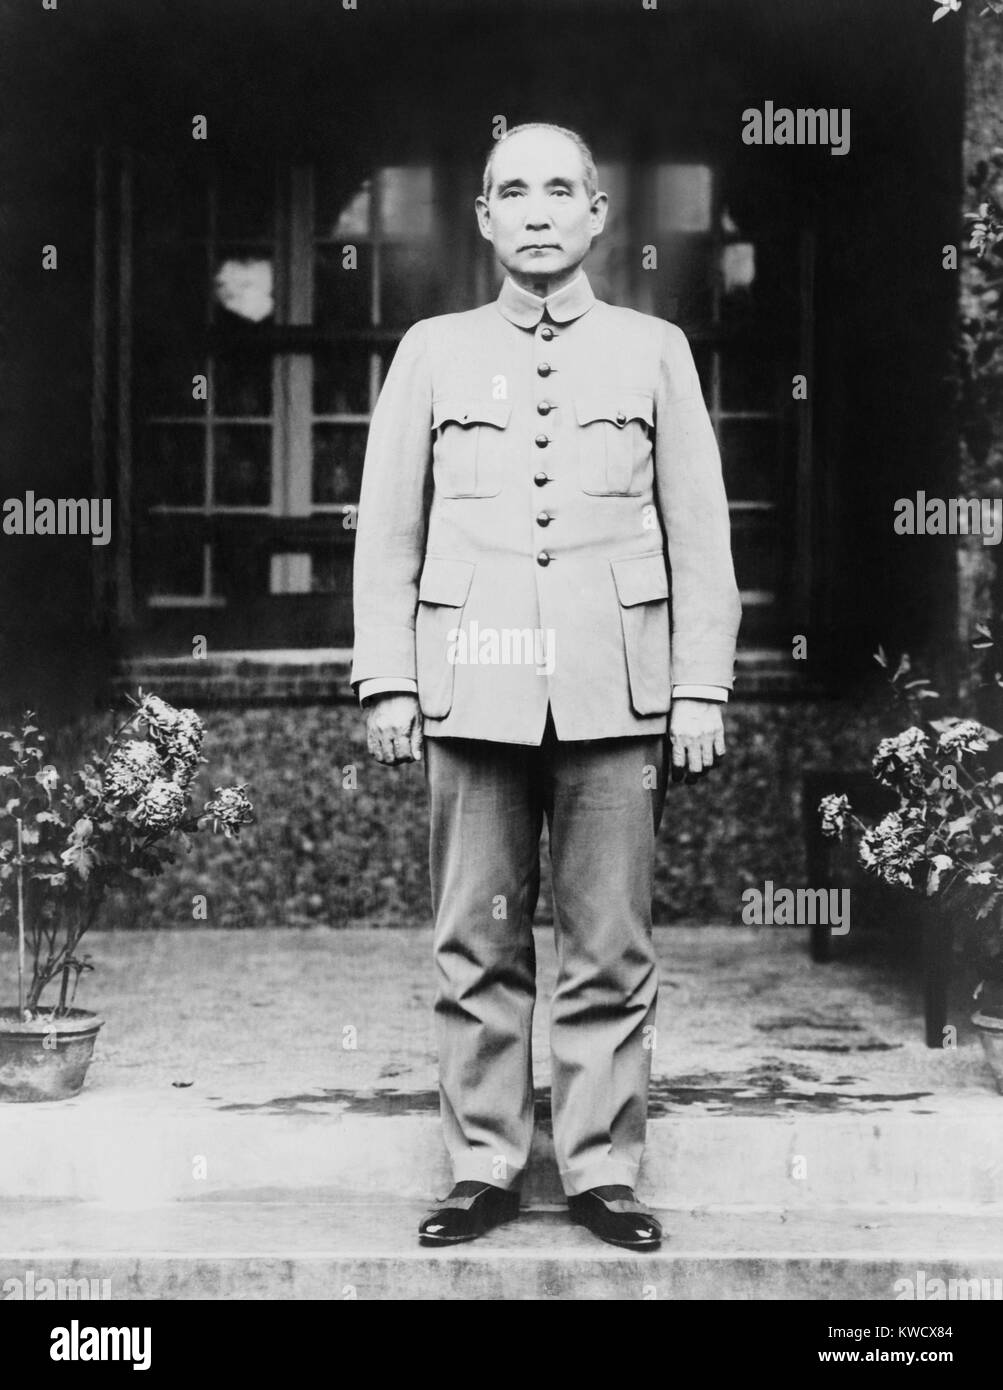 Sun Yat-sen, chef du gouvernement de canton, ch. 1920. Il a été le premier président de la révolutionnaire nouvelle République chinoise en 1912, mais s'écarta pour le plus puissant yuan Shi Kai. Il porte un costume Zhongshan, appelée plus tard un costume mao, qui combinait des éléments d'uniformes militaires, uniformes, étudiant chinois et occidentaux (BSLOC 2017 2 71) Banque D'Images